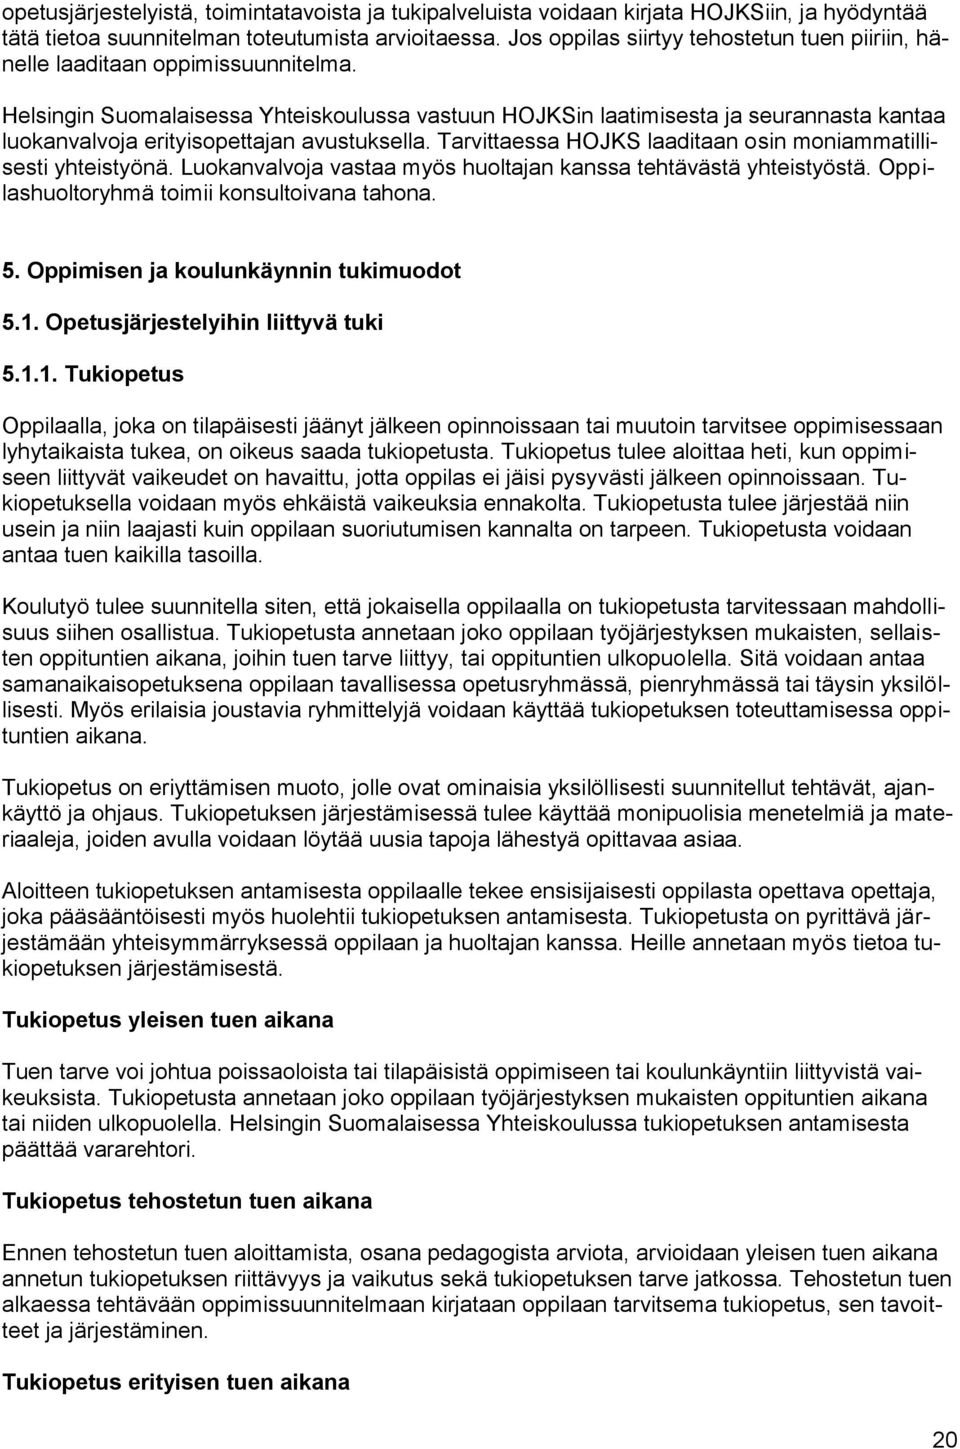 Helsingin Suomalaisessa Yhteiskoulussa vastuun HOJKSin laatimisesta ja seurannasta kantaa luokanvalvoja erityisopettajan avustuksella. Tarvittaessa HOJKS laaditaan osin moniammatillisesti yhteistyönä.